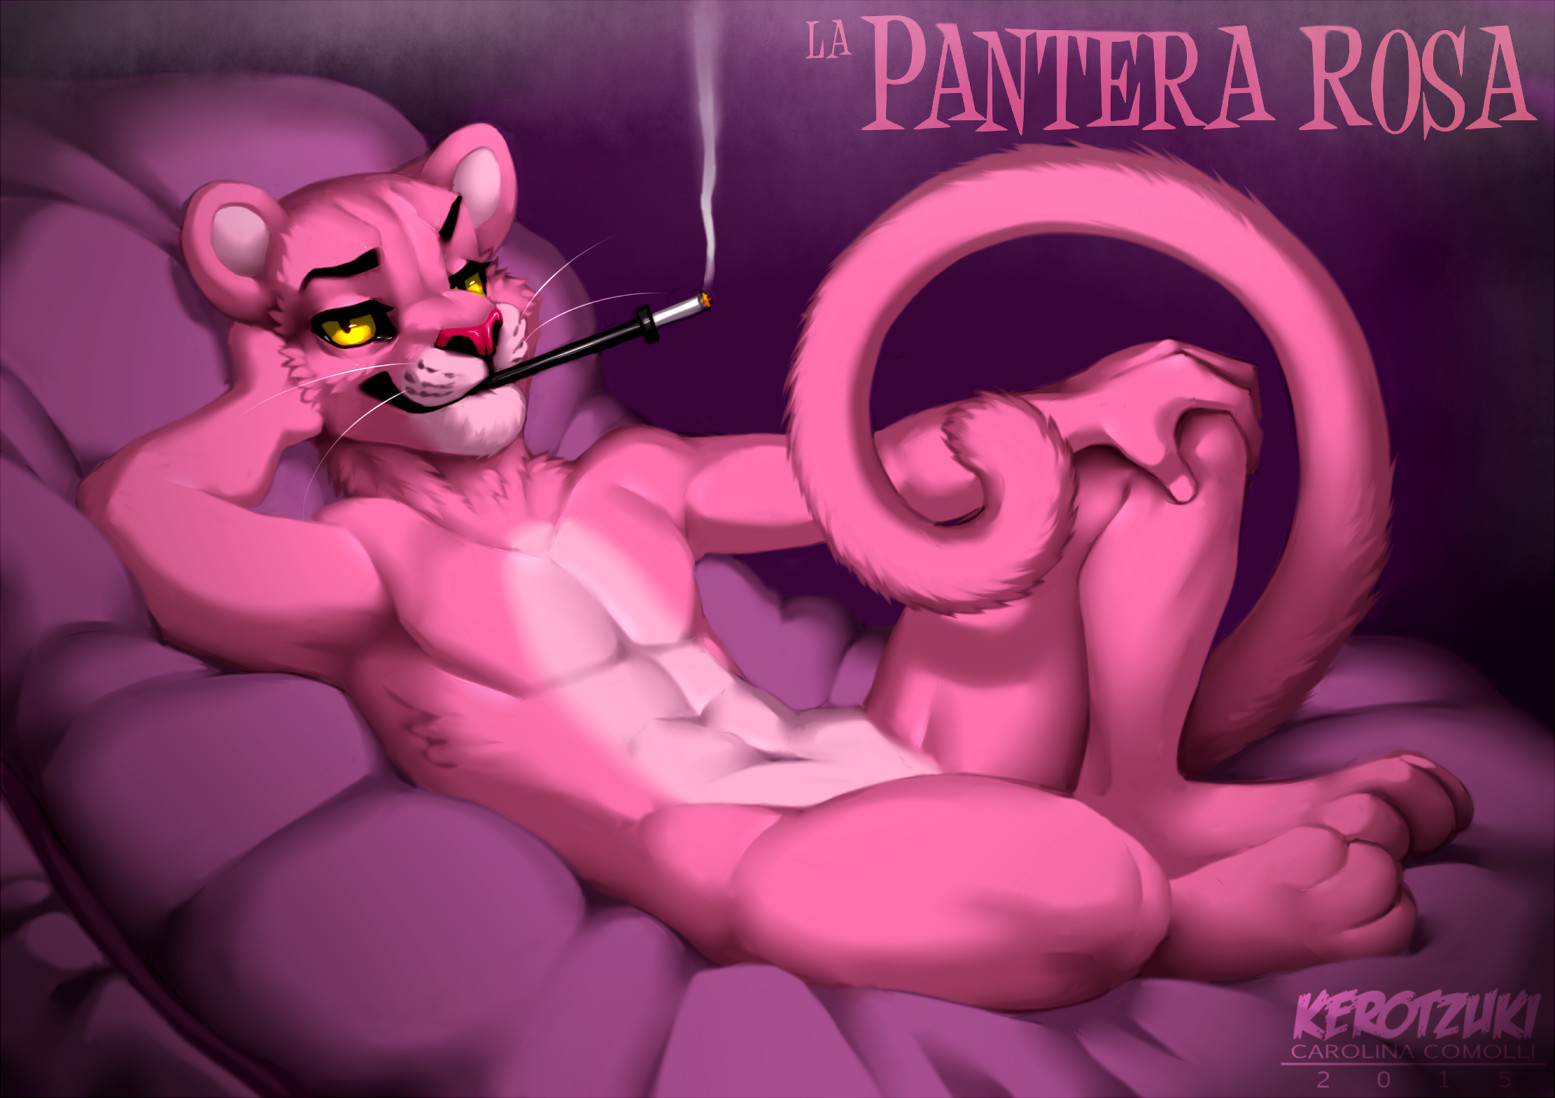 Pink panter, Carolina Comolli.